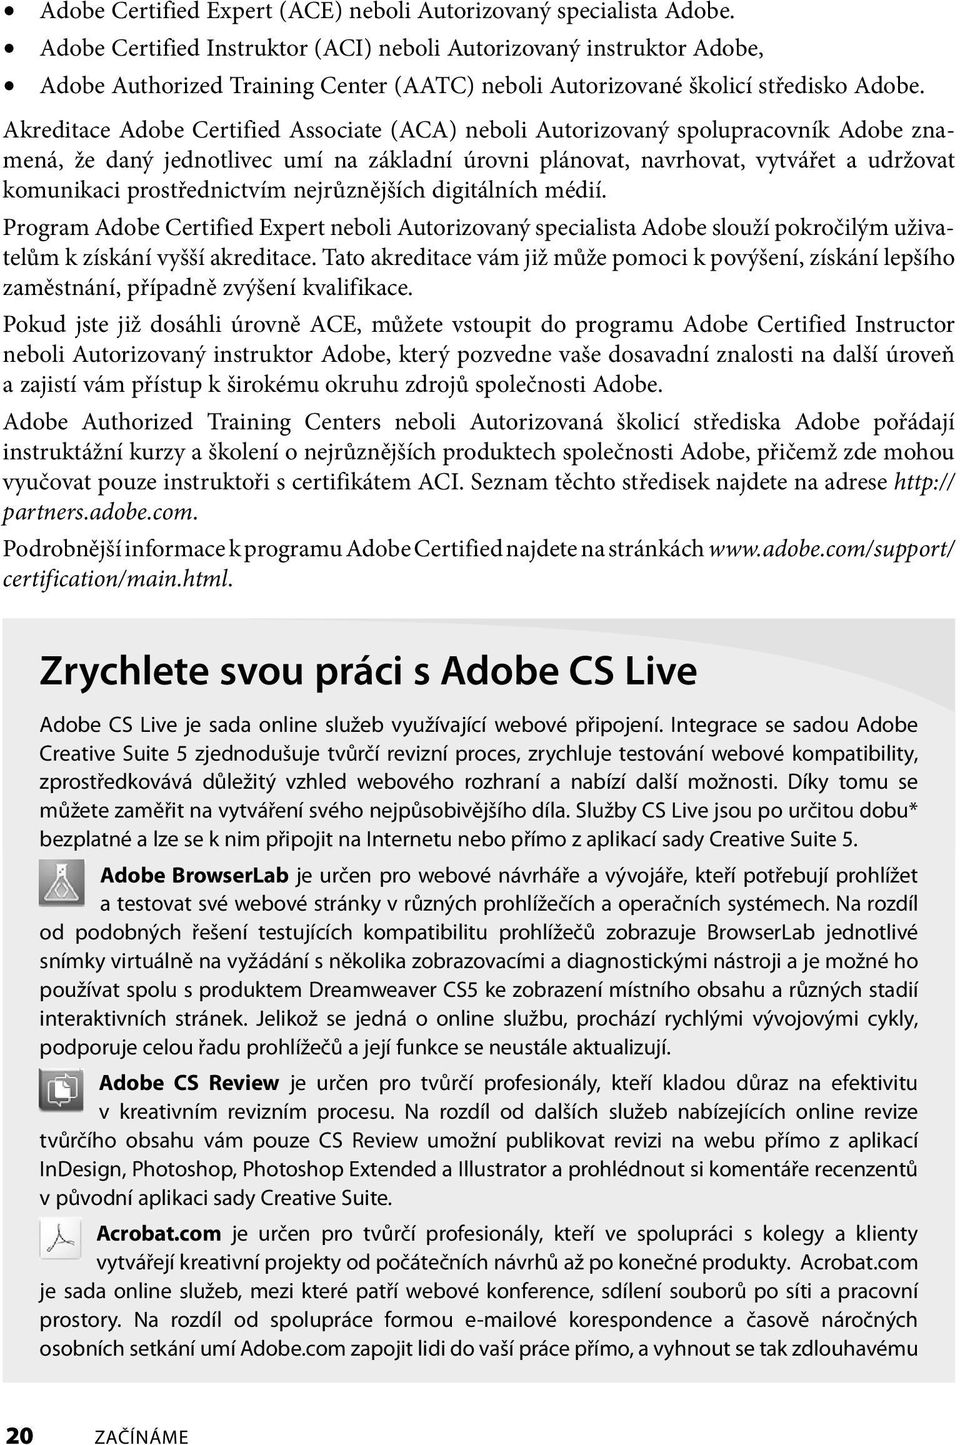 Akreditace Adobe Certified Associate (ACA) neboli Autorizovaný spolupracovník Adobe znamená, že daný jednotlivec umí na základní úrovni plánovat, navrhovat, vytvářet a udržovat komunikaci